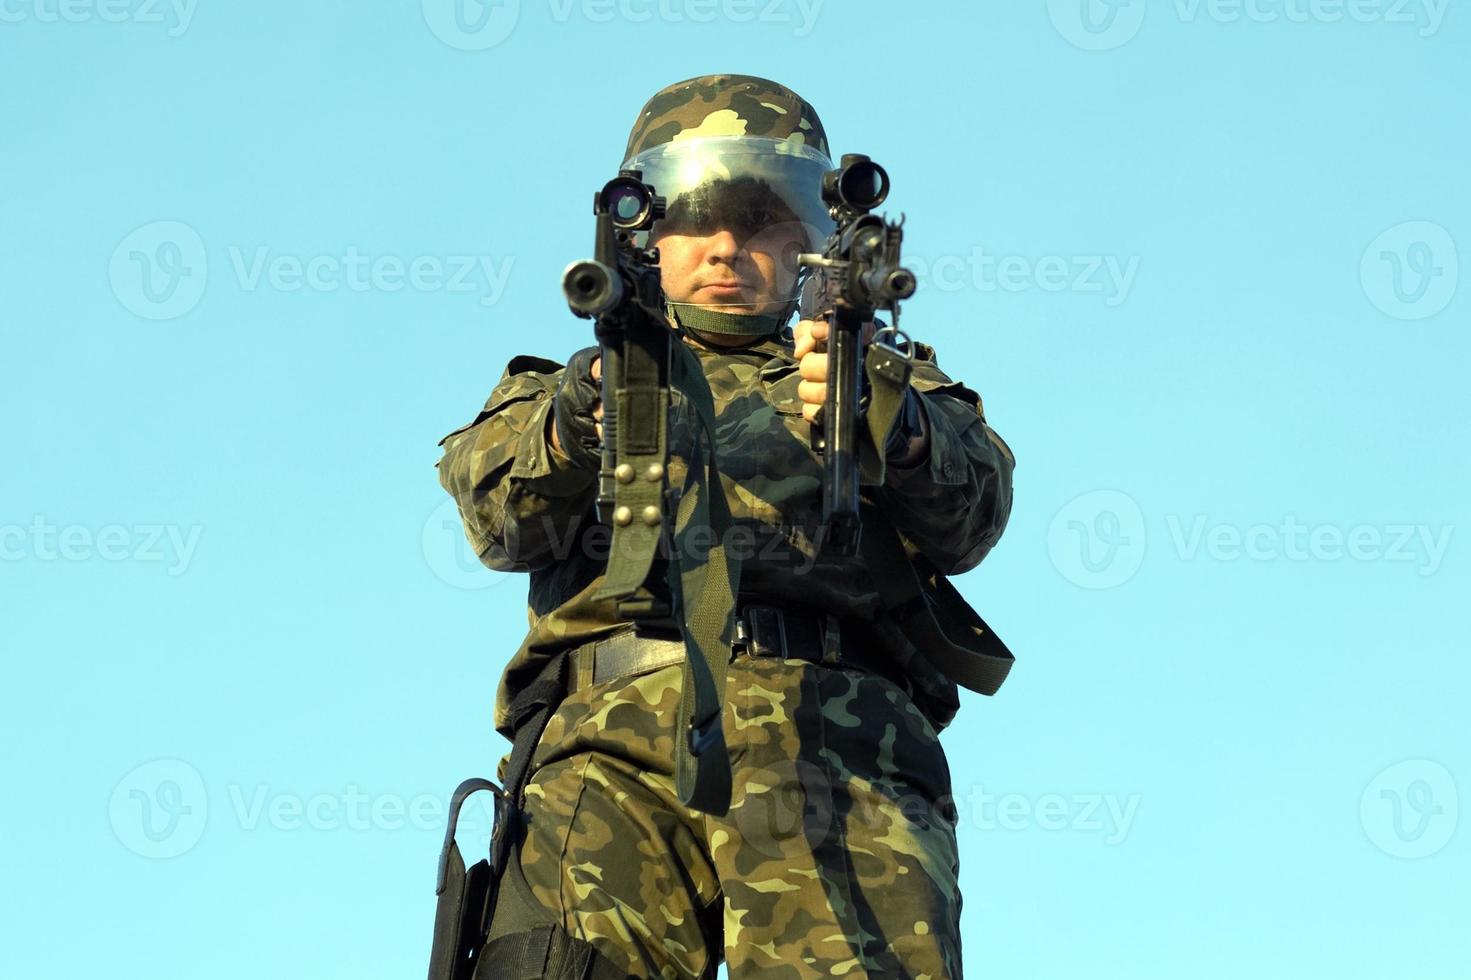 soldado del ejército con ametralladora foto